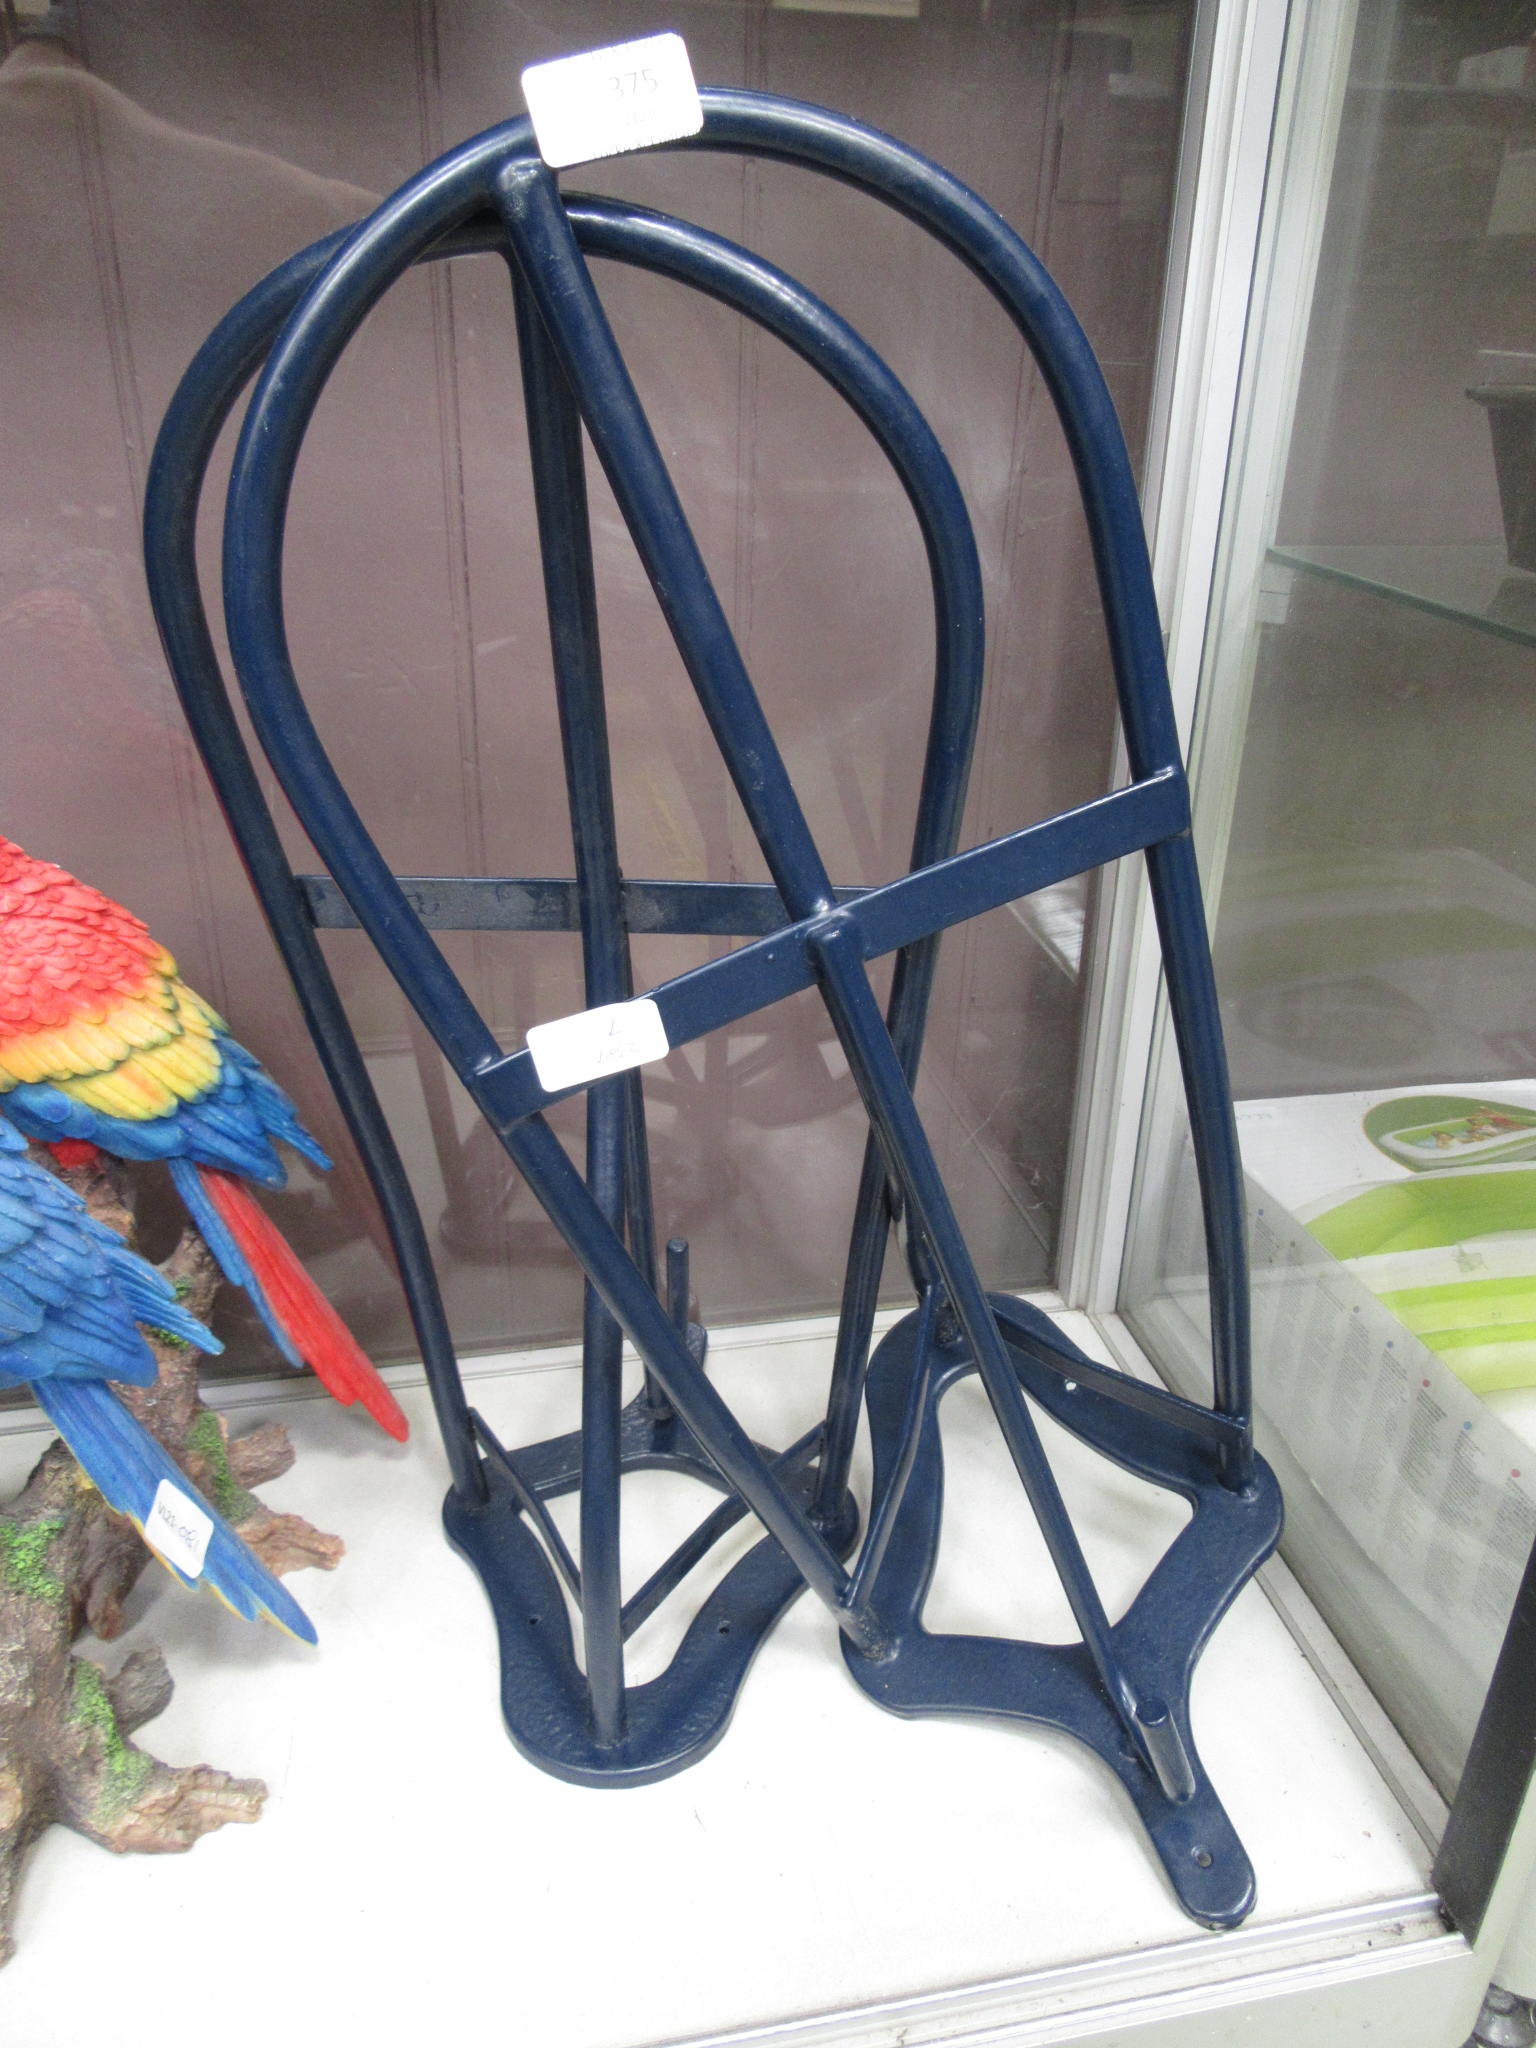 A pair of saddle racks